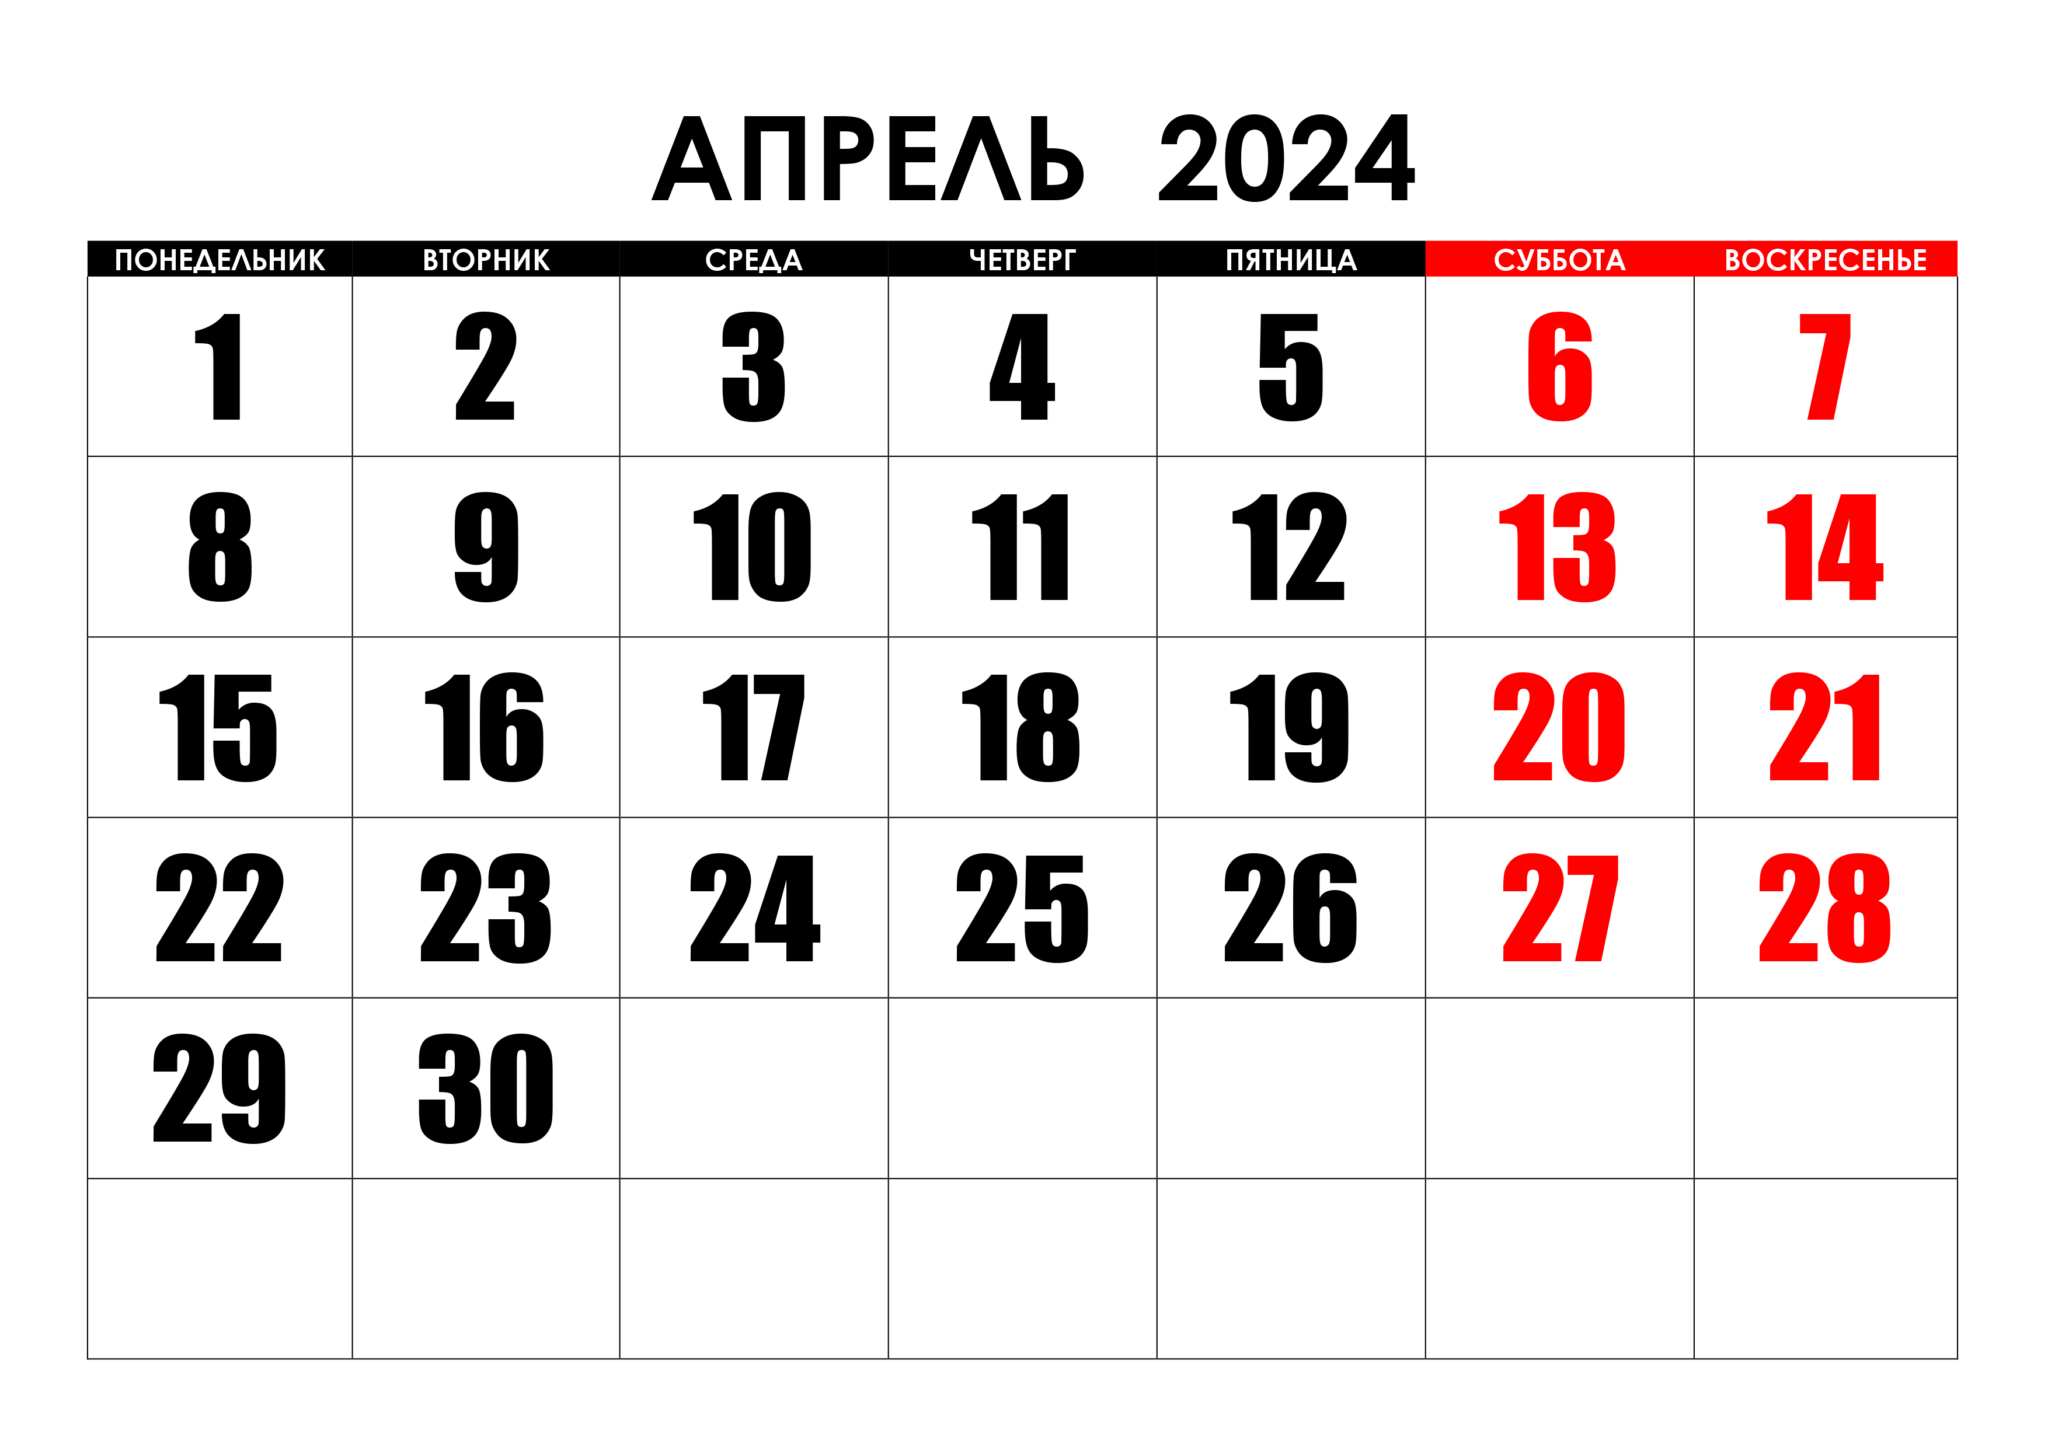 Сколько осталось до 16 апреля 2024 дней. Календарь август 2022. Календарь на май 2022 года. Календарь на август 2022г. Календарь на пвгуст 2022года.